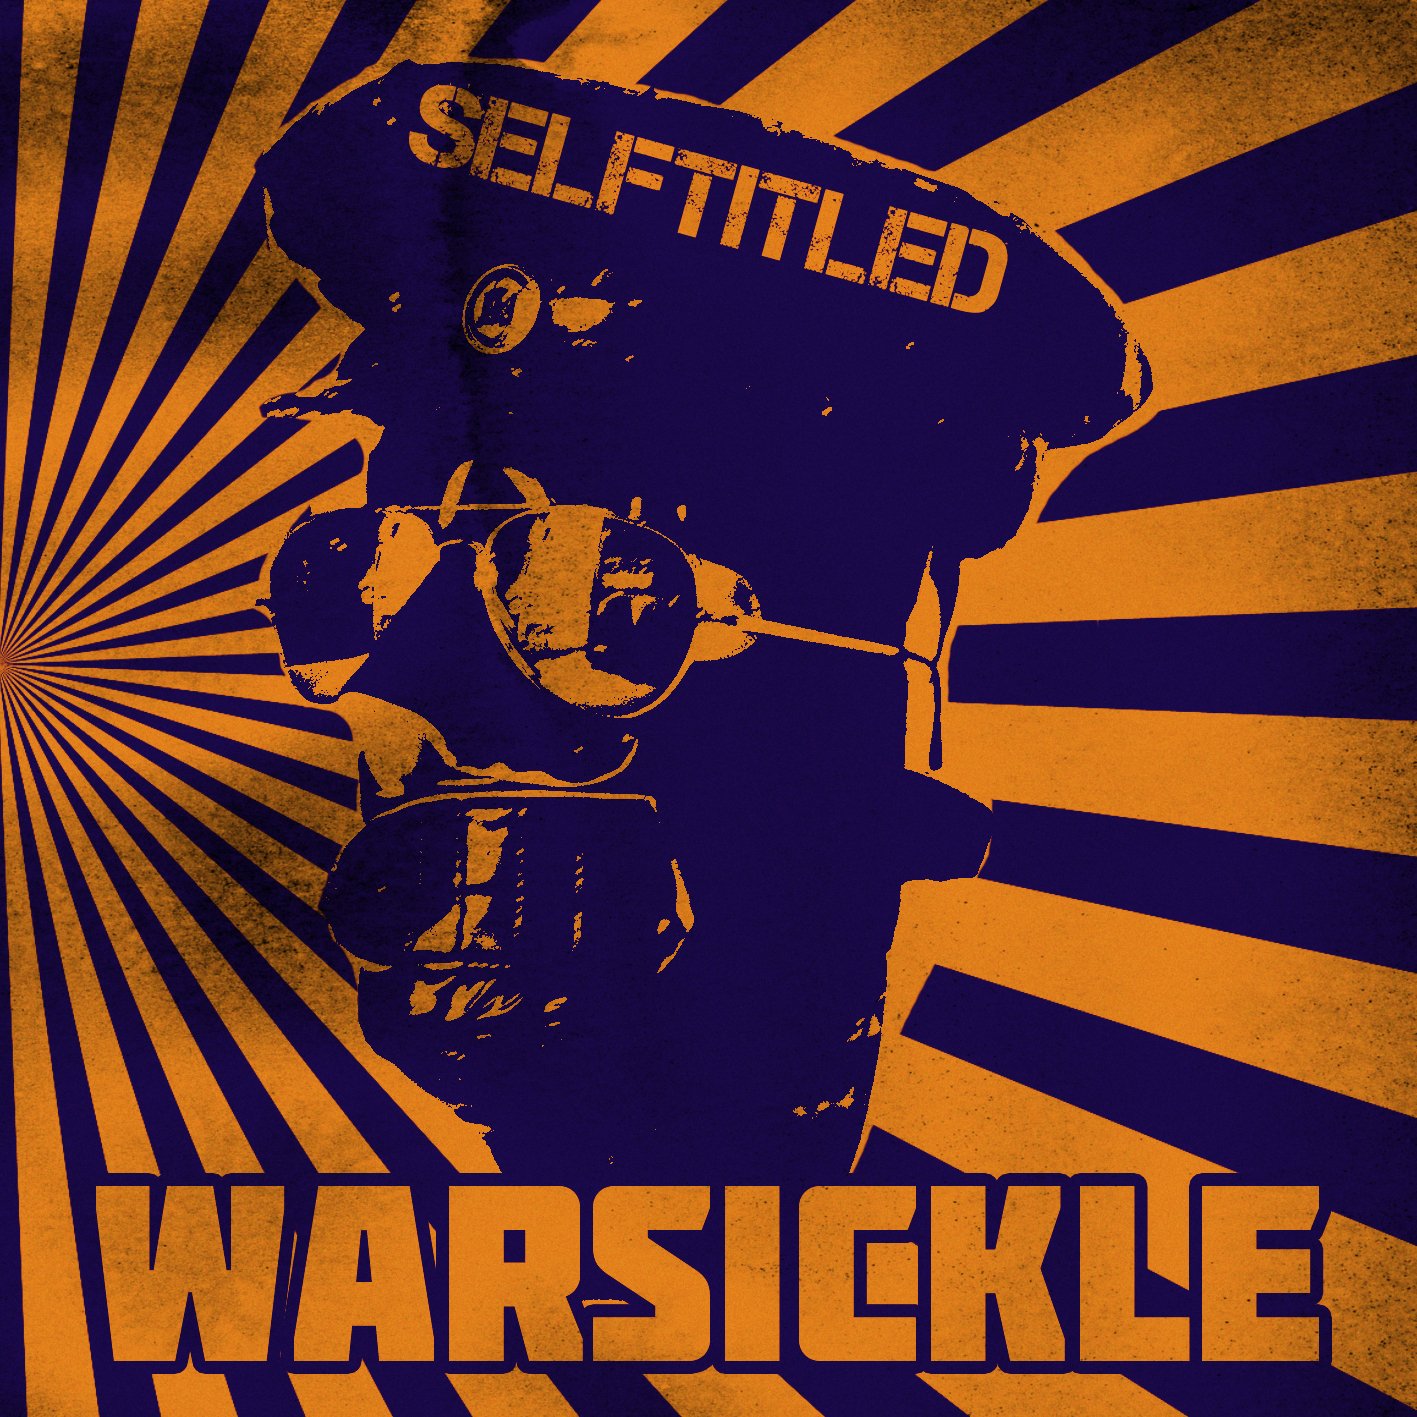 warsickle